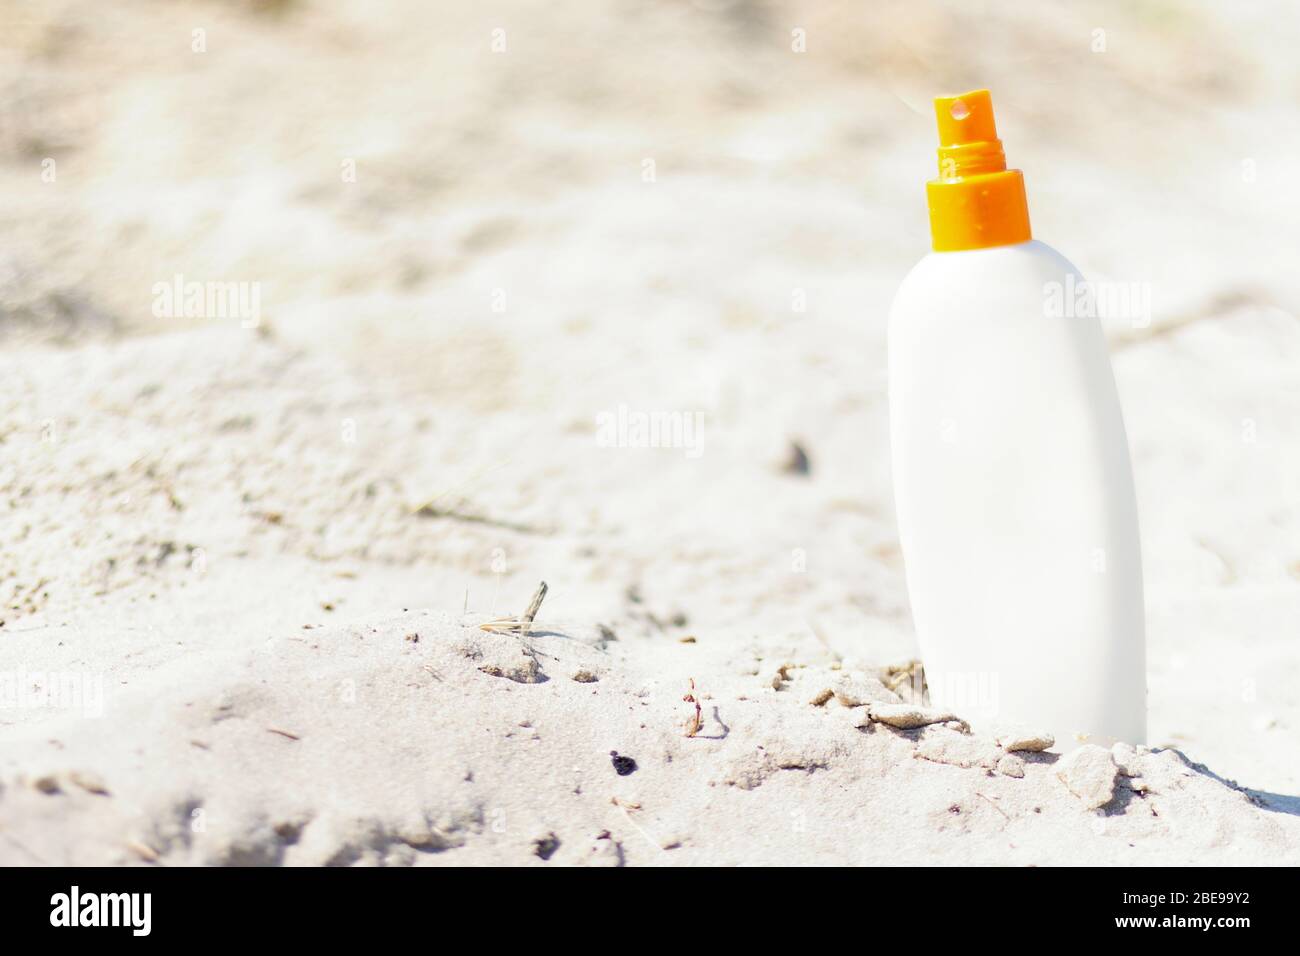 Maquette pour crème solaire sur la plage tropicale sauvage avec sable naturel. Bouteille de crème solaire blanche. Été, vacances, concept de voyage. Espace de copie. Banque D'Images